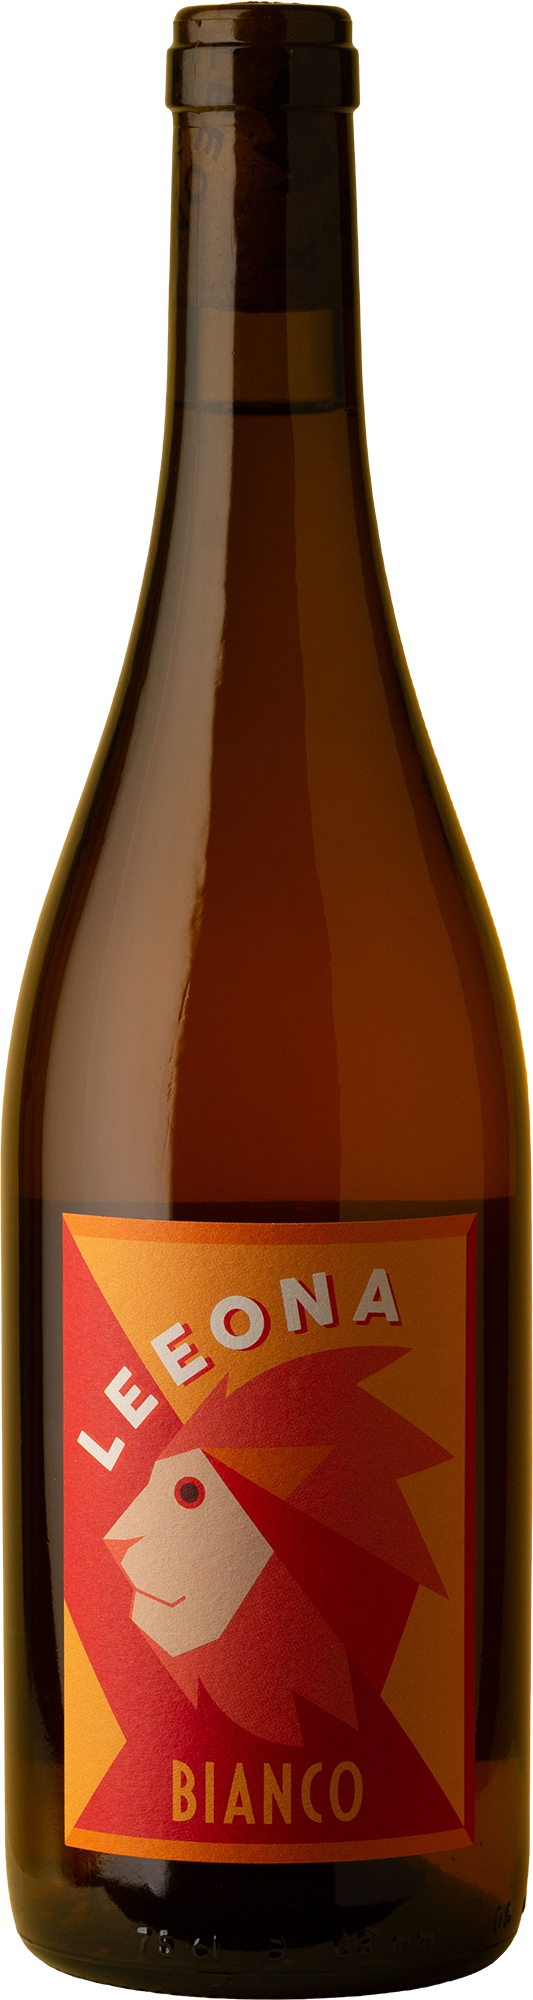 Leeona - Bianco 2020 Orange Wine